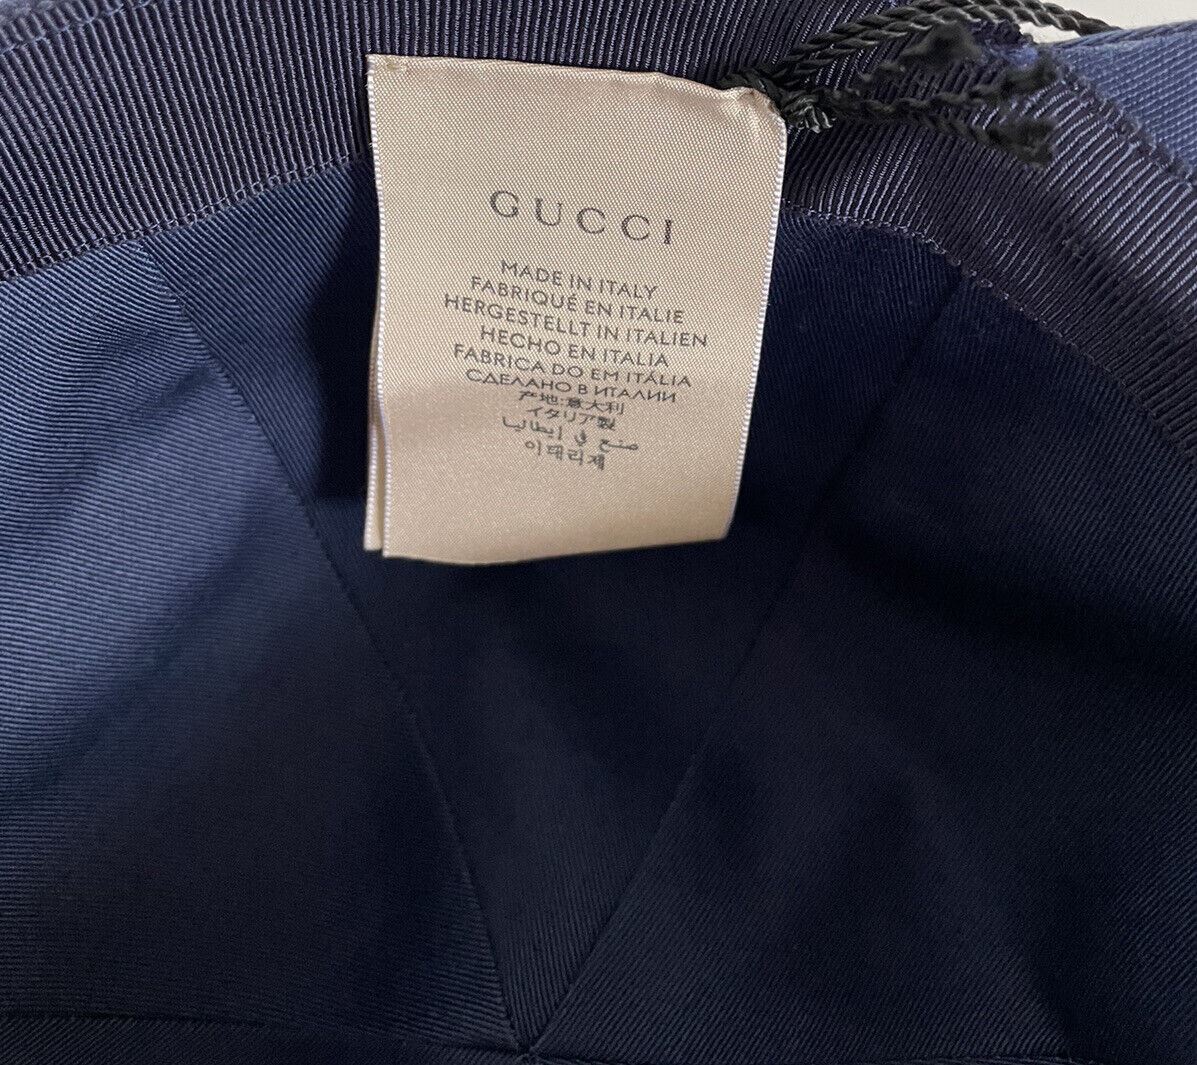 Neu mit Etikett: Gucci Eschatology Baseballkappe, blaue Mütze, mittelgroß, hergestellt in Italien, 656183 